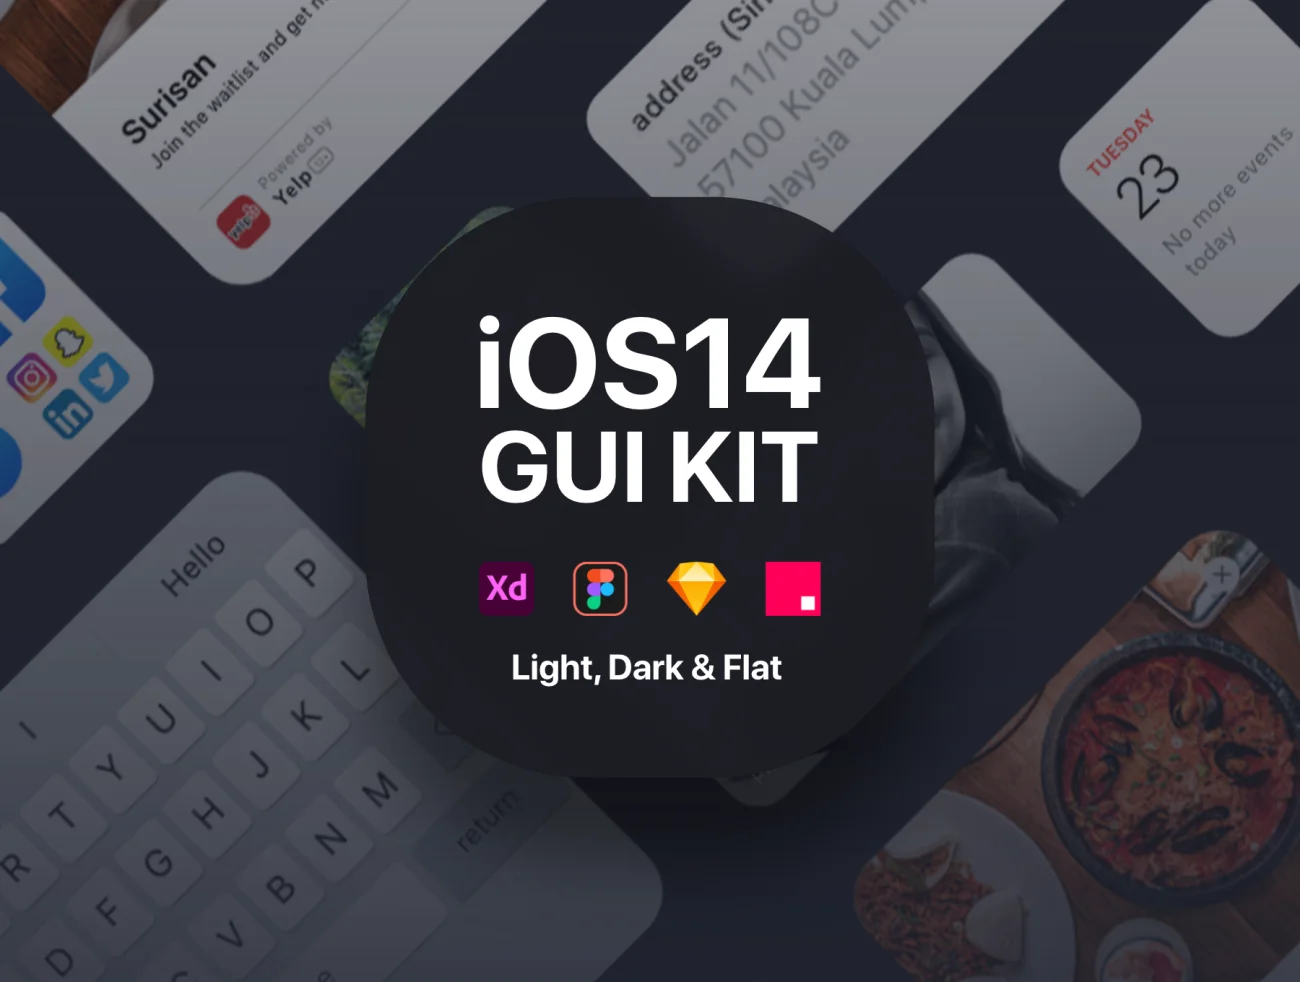 iOS14 GUI KIT iOS14 用户界面设计套件含亮暗模式GUI界面-UI/UX、ui套件、列表、卡片式、图表、应用、数据可视化-仪表板、日历、表单-到位啦UI